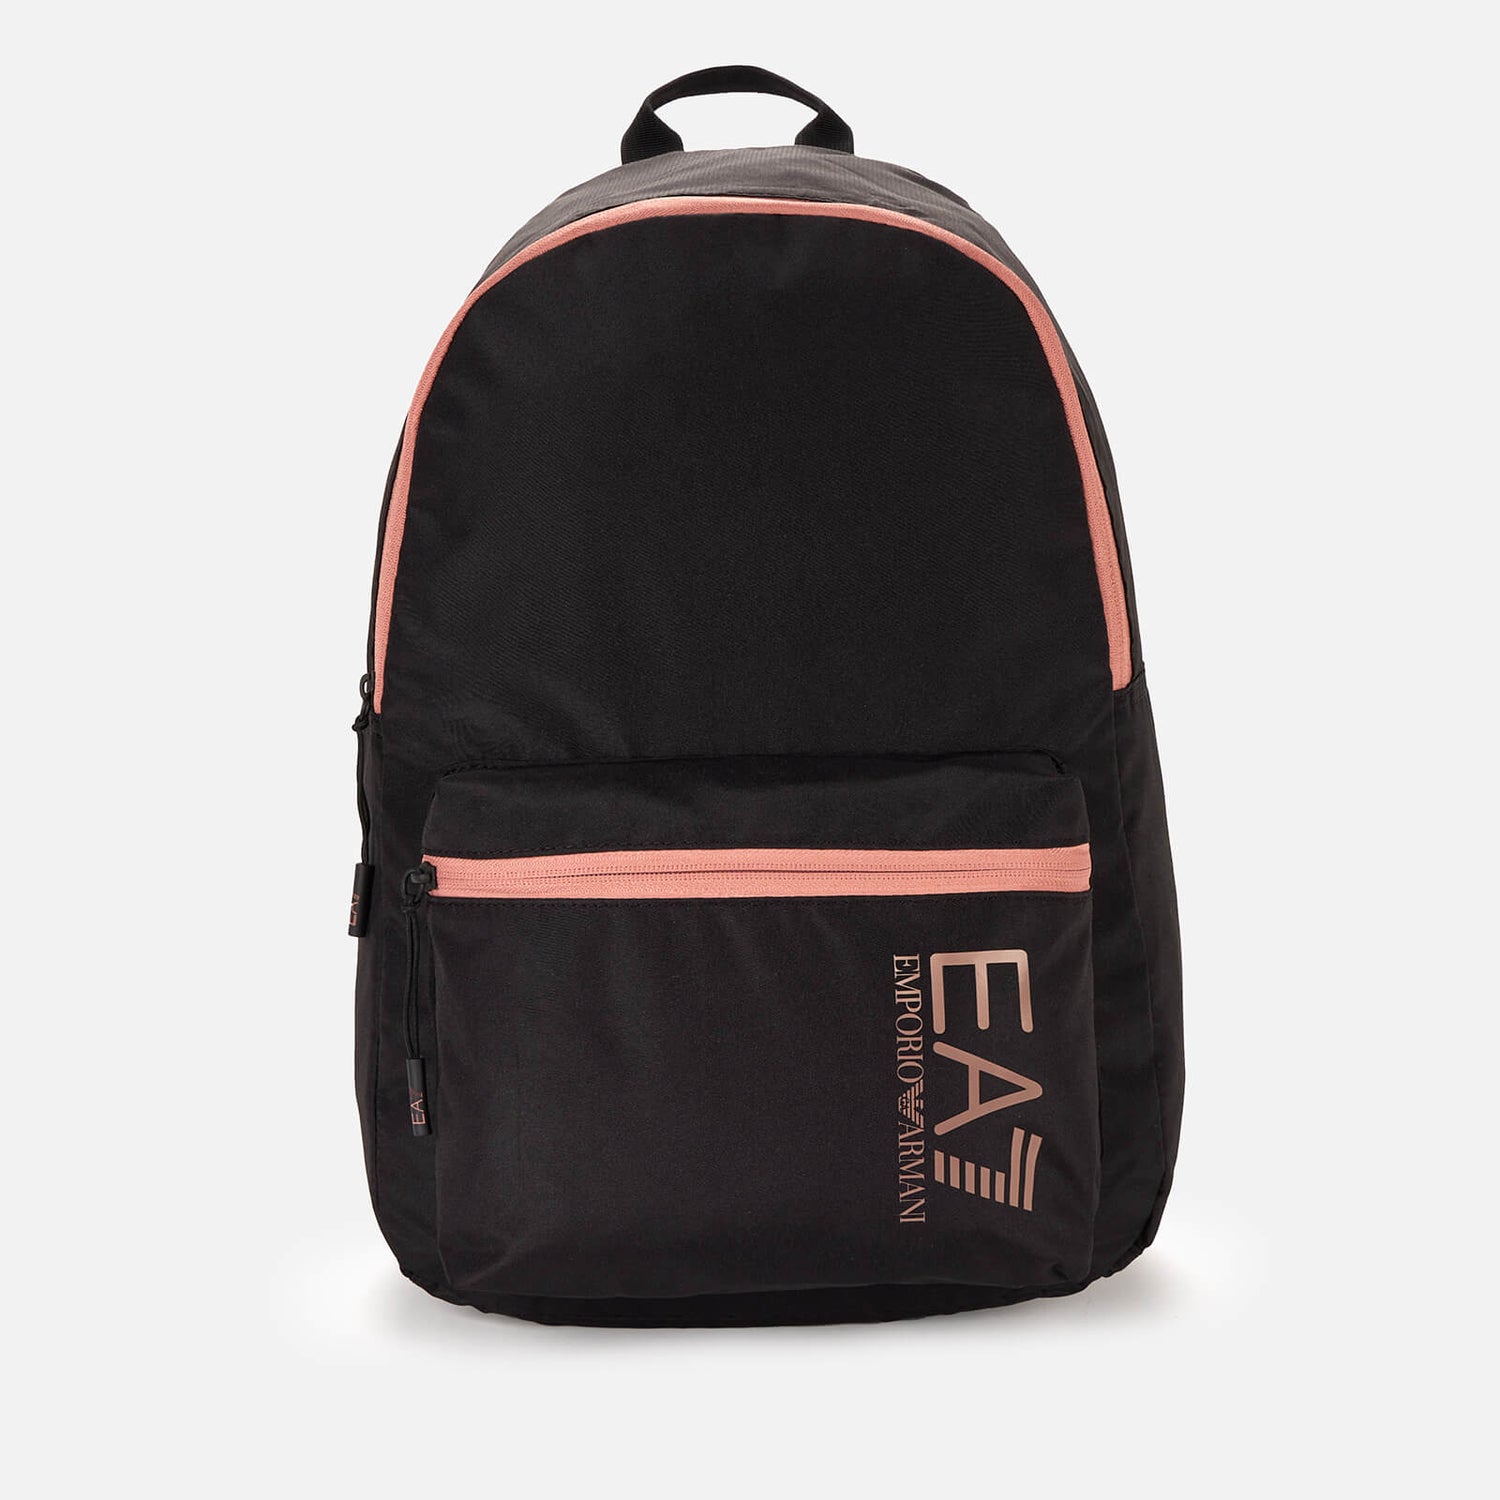 EA7 Men's Contrast Logo Backpack - Black/Ash Rose